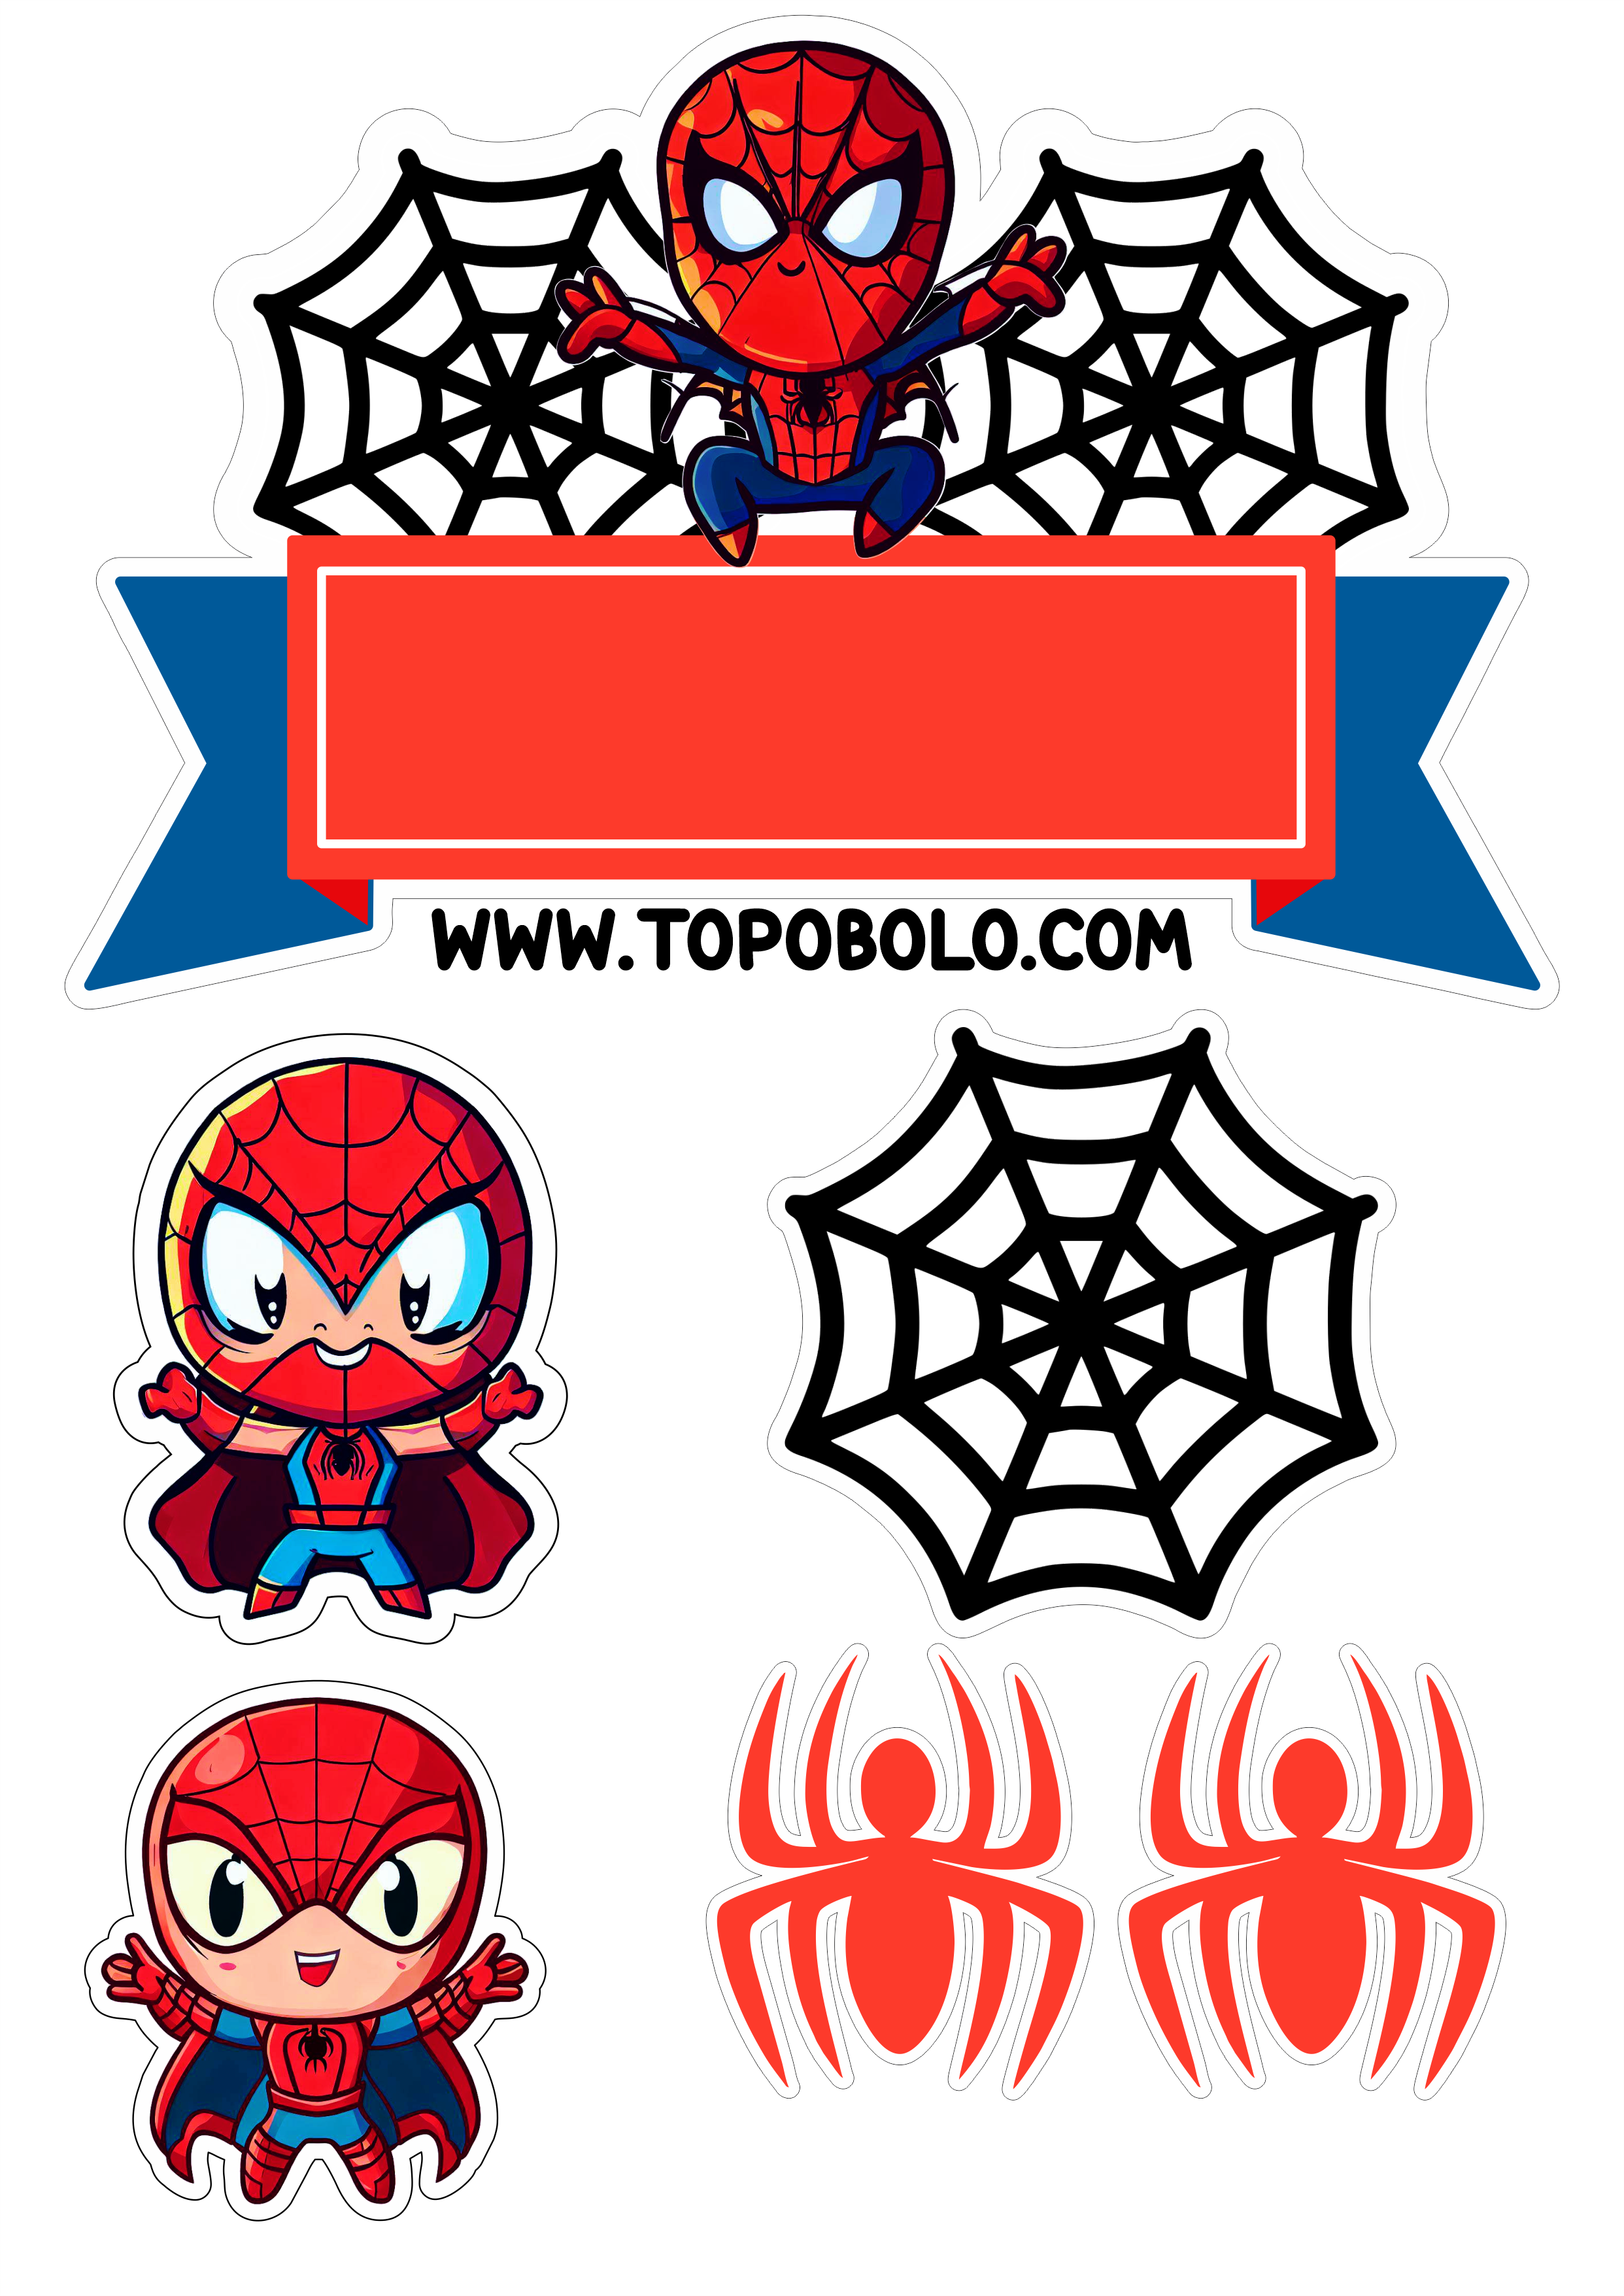 Homem-Aranha aniversário infantil Topo de bolo para imprimir Spider-Man cute chibi papelaria png